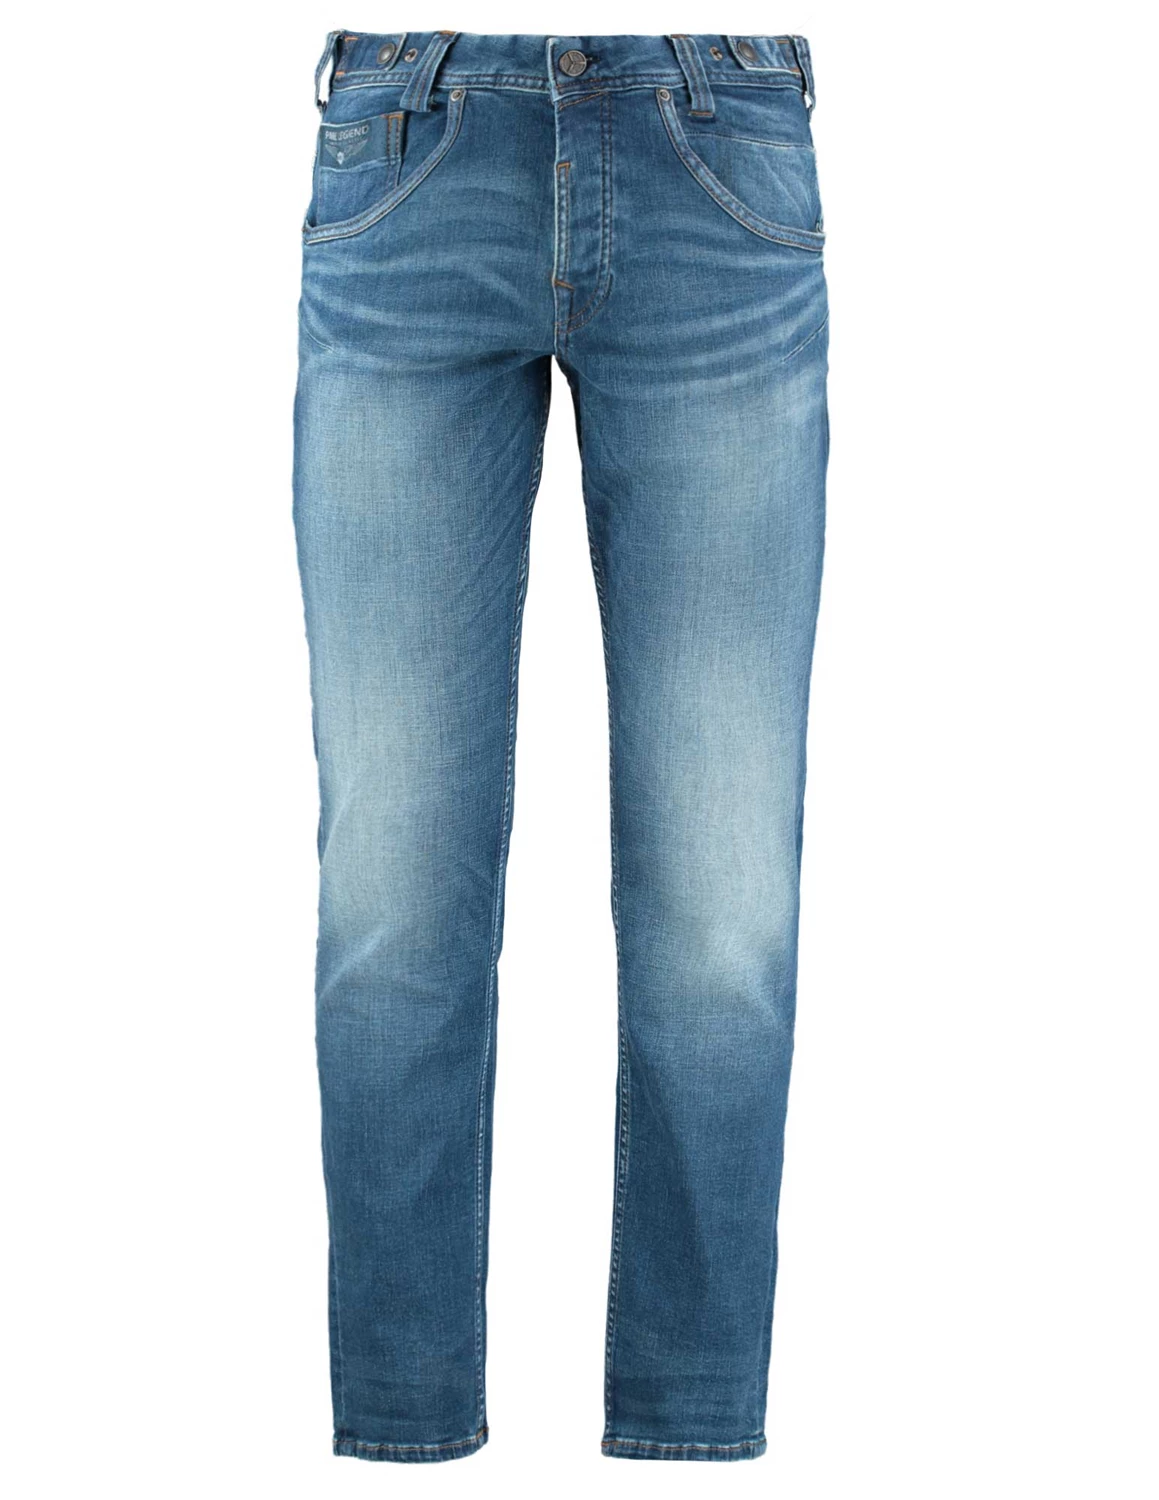 Vergelijking stoel Zelfrespect PME Legend SKYHAWK New Mid Stone PTR170-NMS jeans blauw kopen bij The Stone